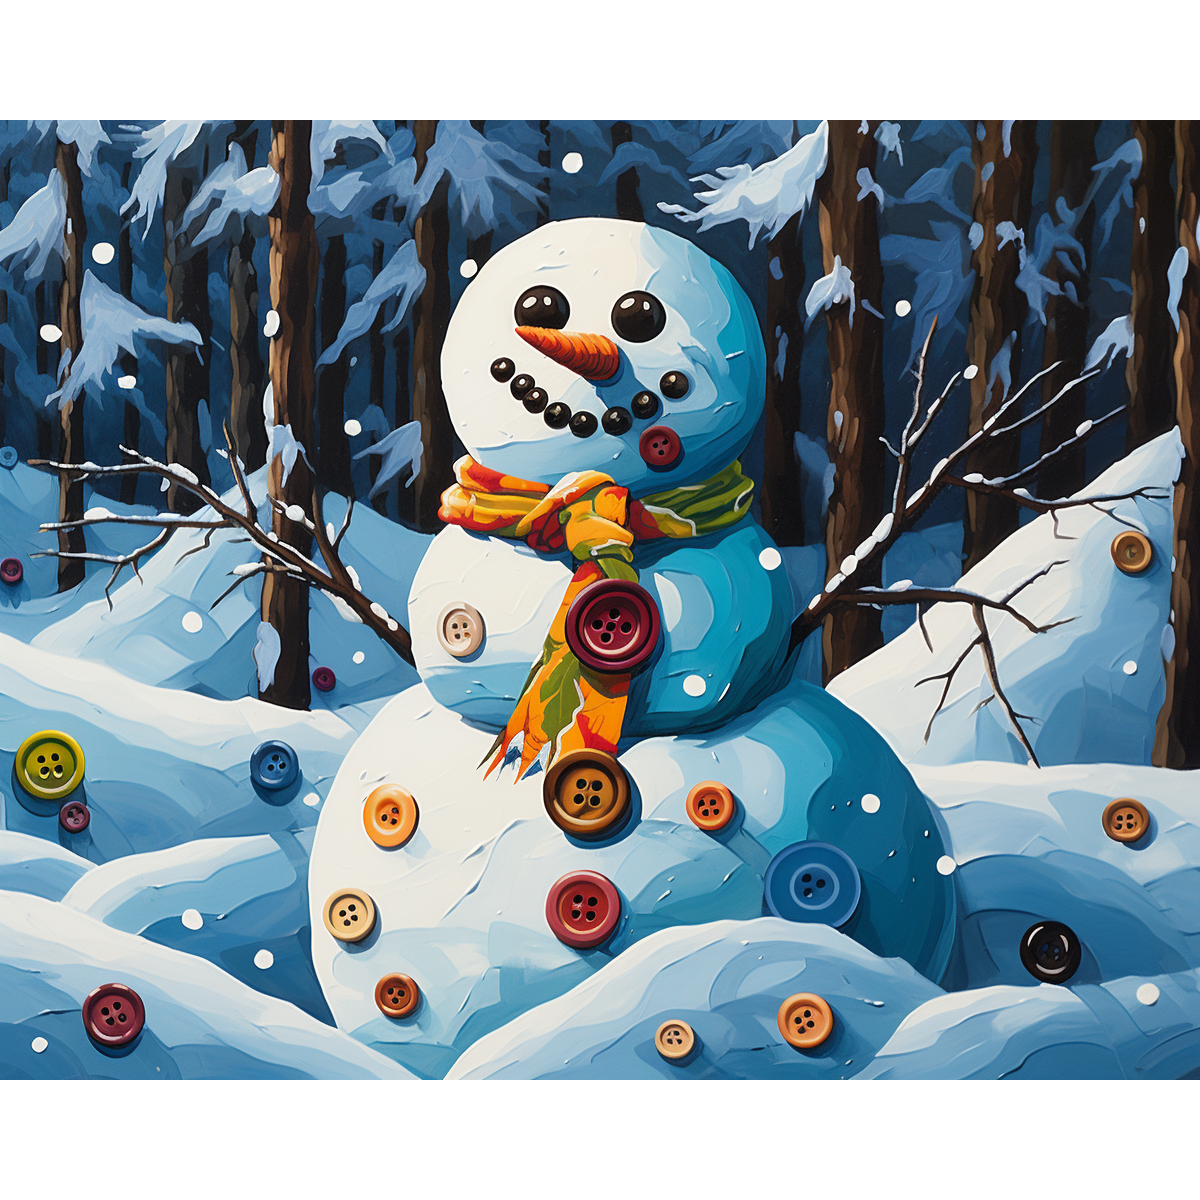 Abstracte sneeuwpop met knoop